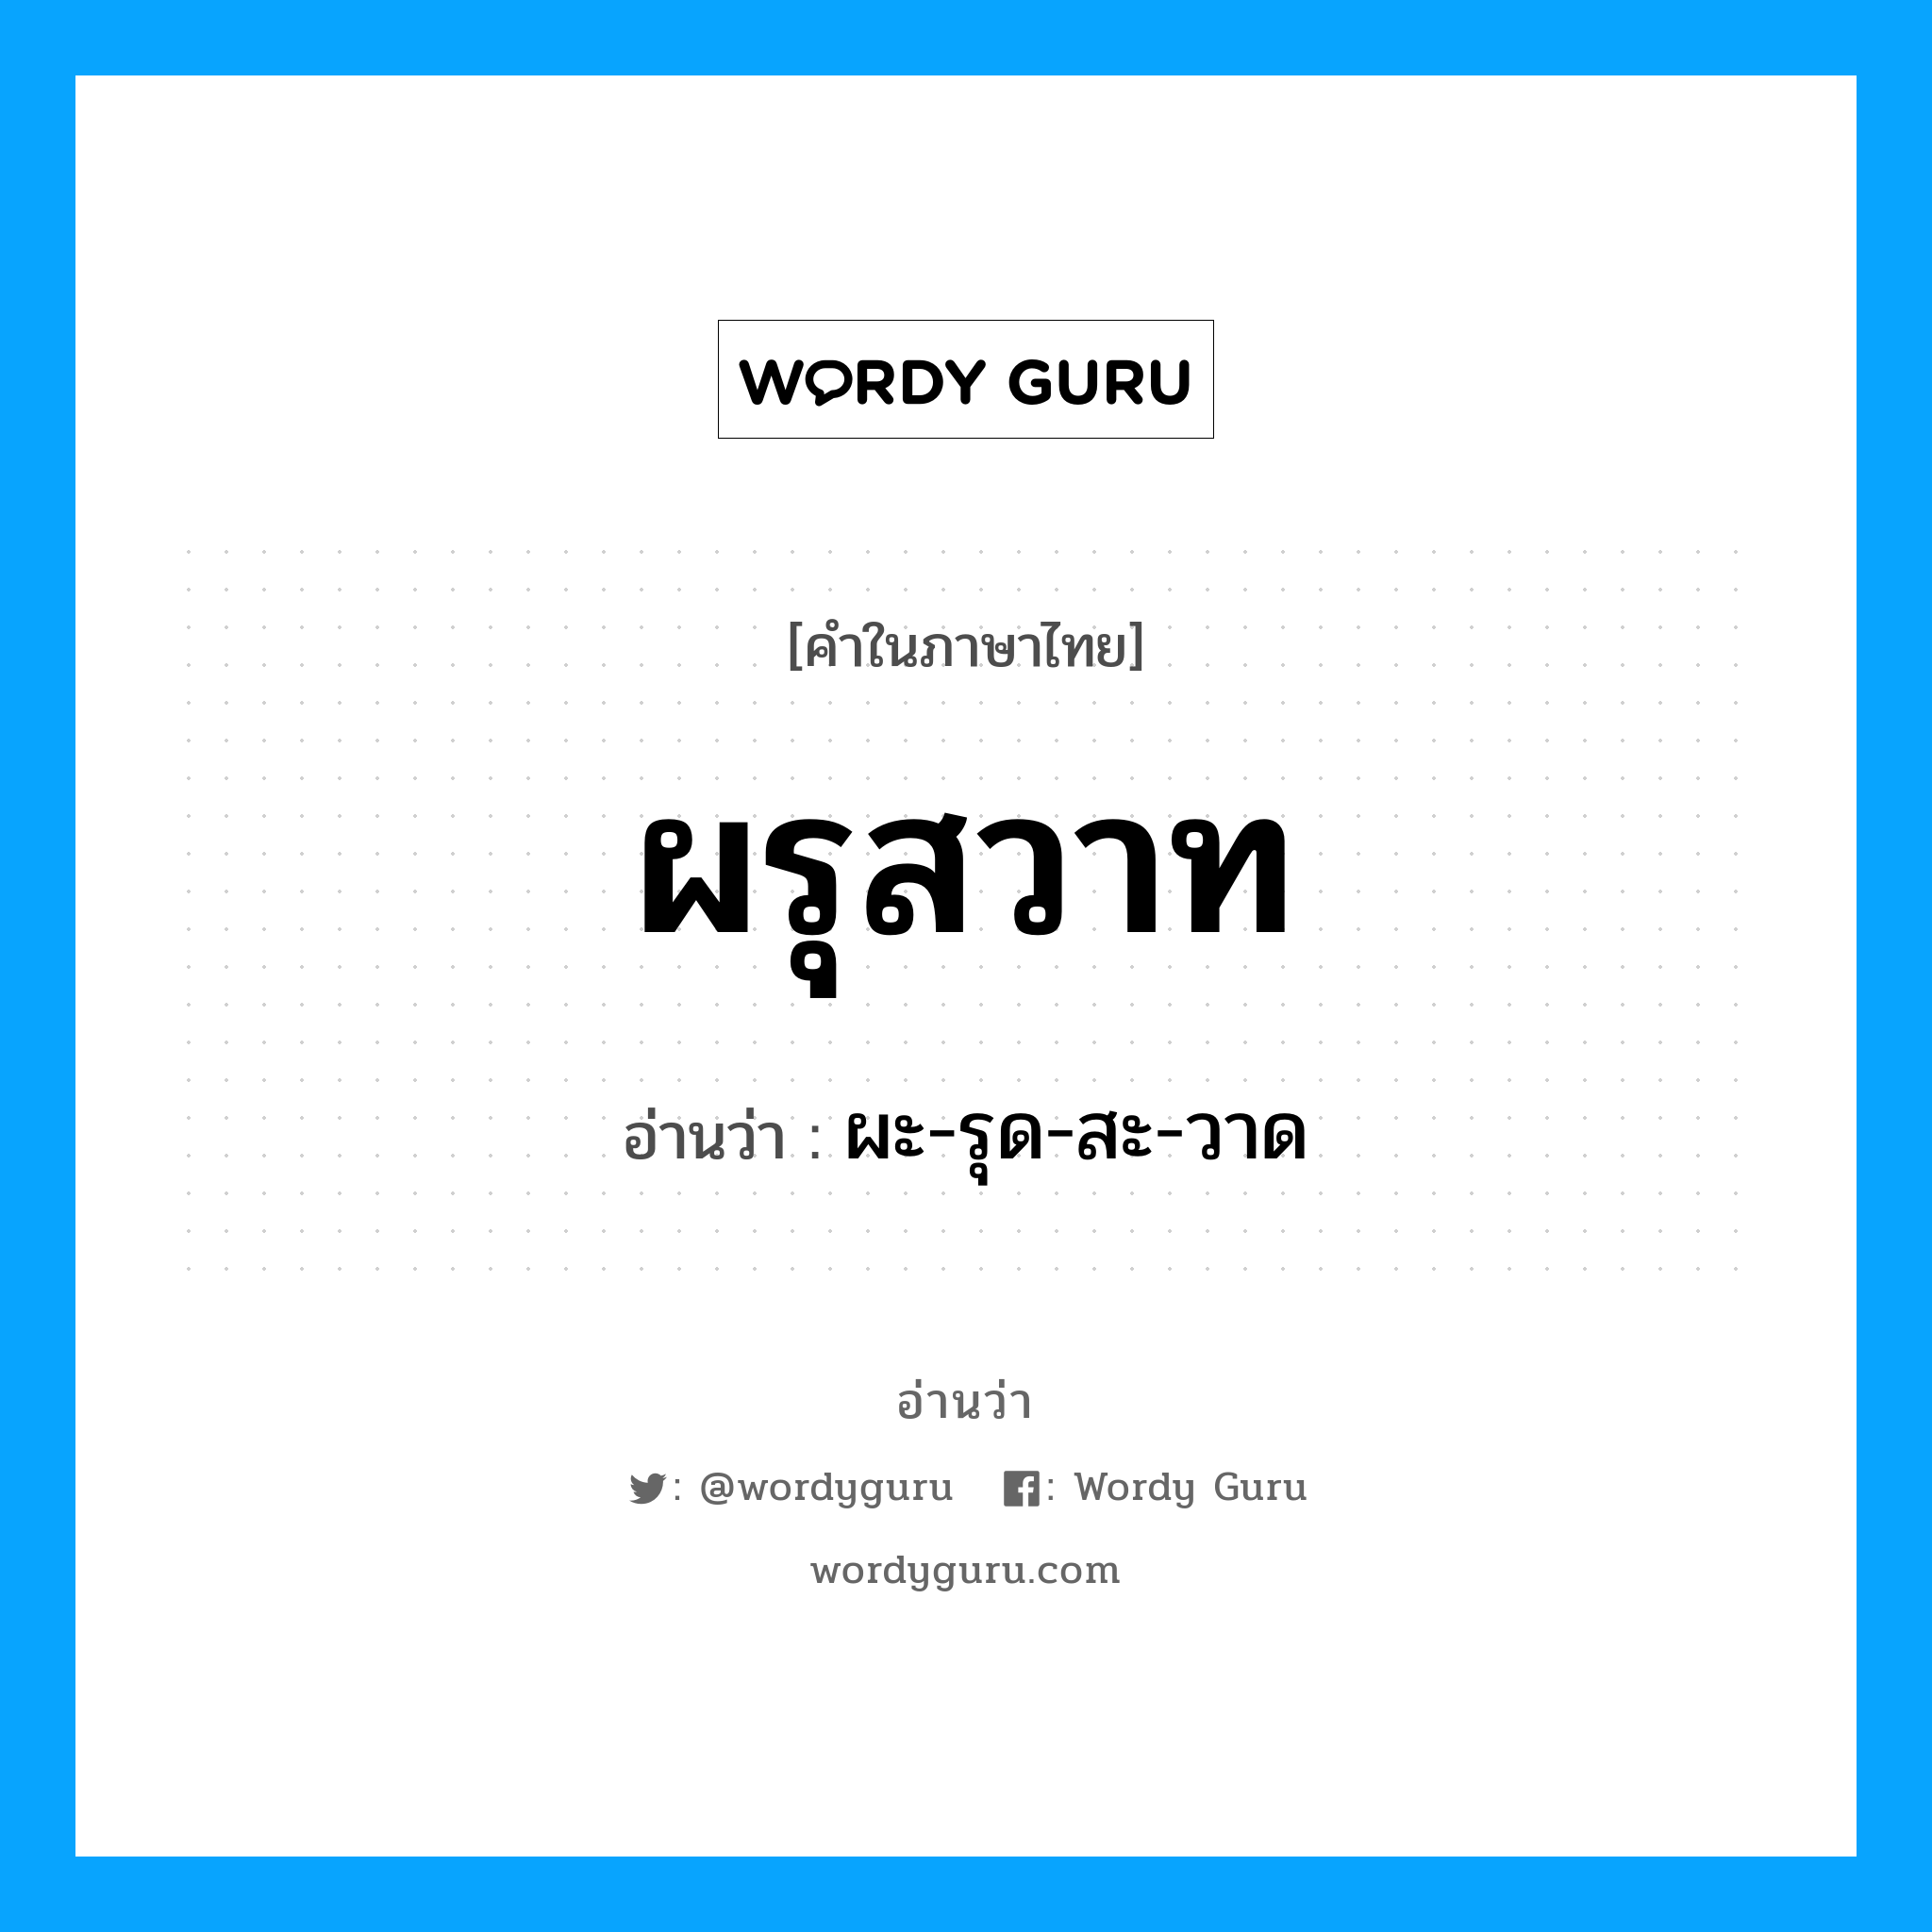 ผะ-รุด-สะ-วาด เป็นคำอ่านของคำไหน?, คำในภาษาไทย ผะ-รุด-สะ-วาด อ่านว่า ผรุสวาท